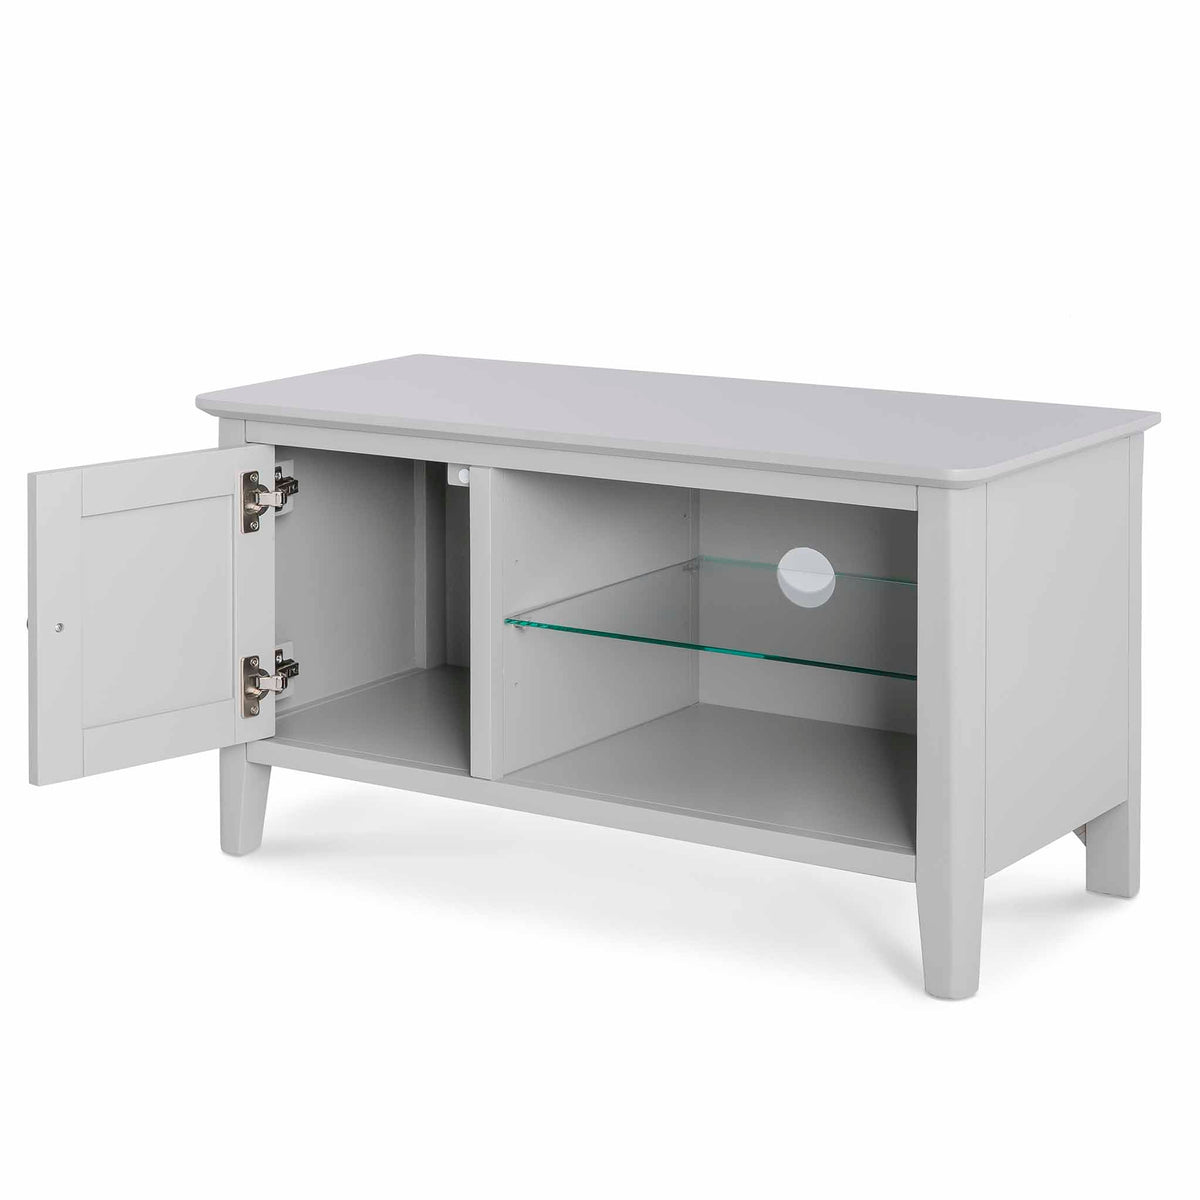 Elgin Grey 90cm Small TV Unit - Side view with cupboard door open